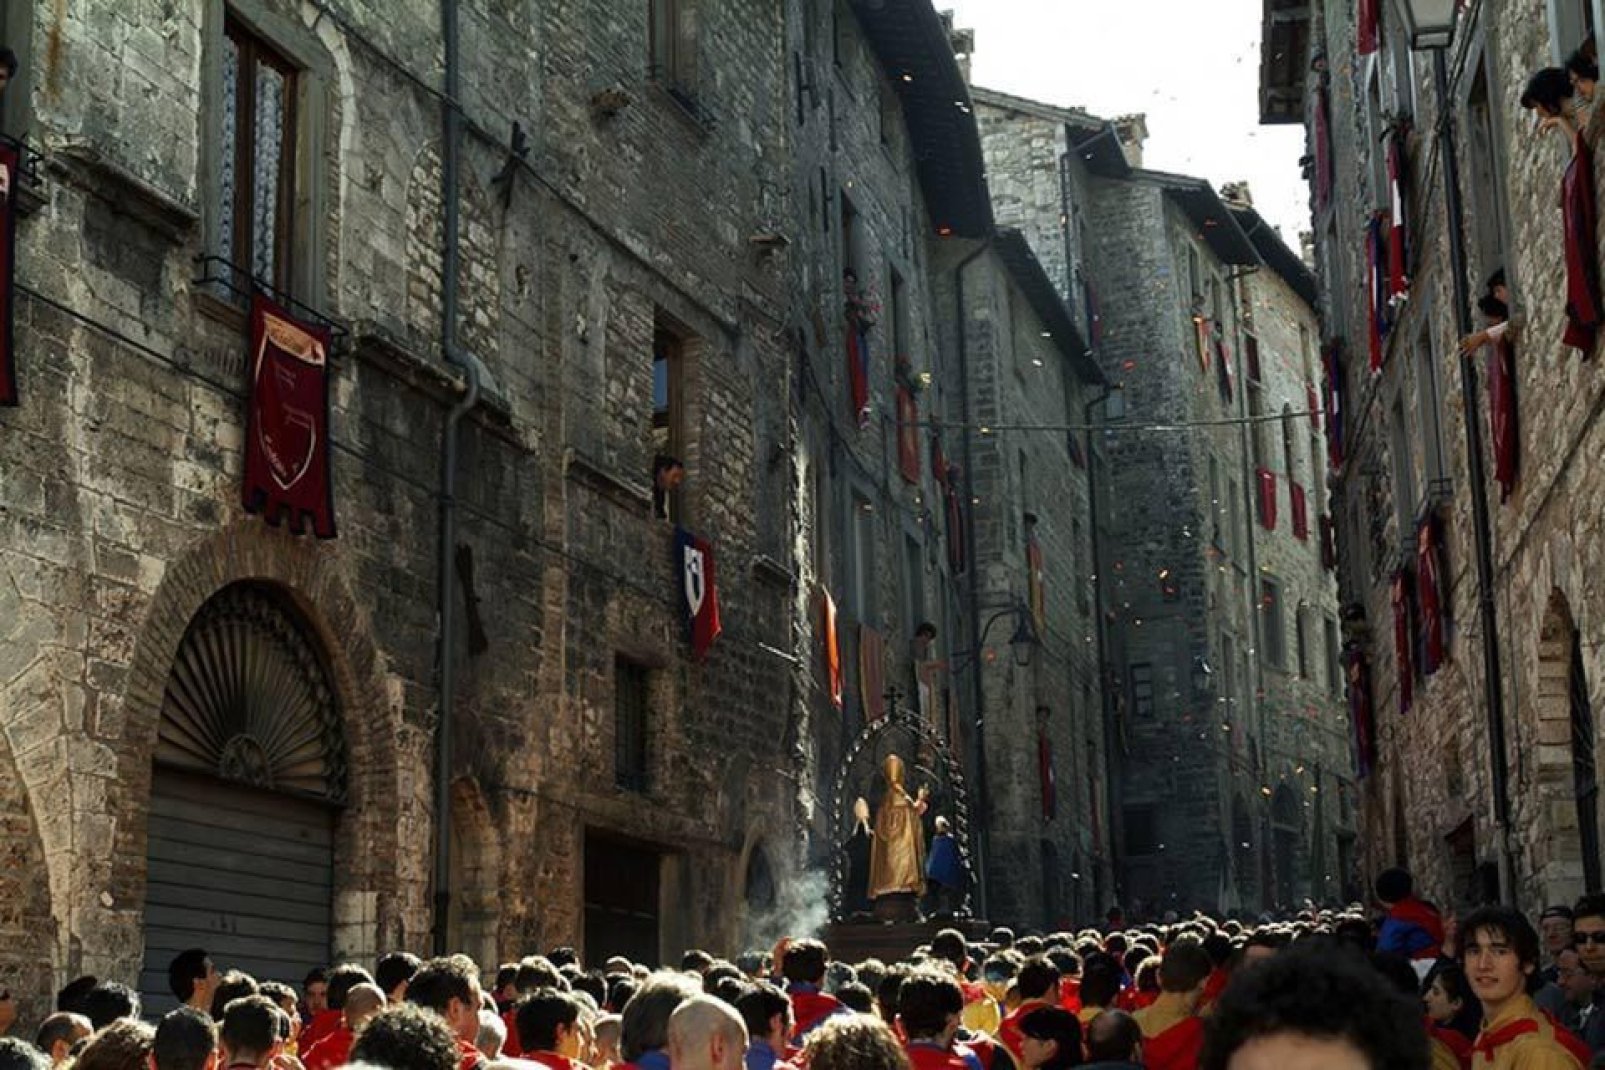 La Festa dei Ceri se celebra en Gubbio el 15 de mayo. Es, según la tradición, una celebración en honor de San Ubaldo Baldassini, obispo y patrón de la ciudad.